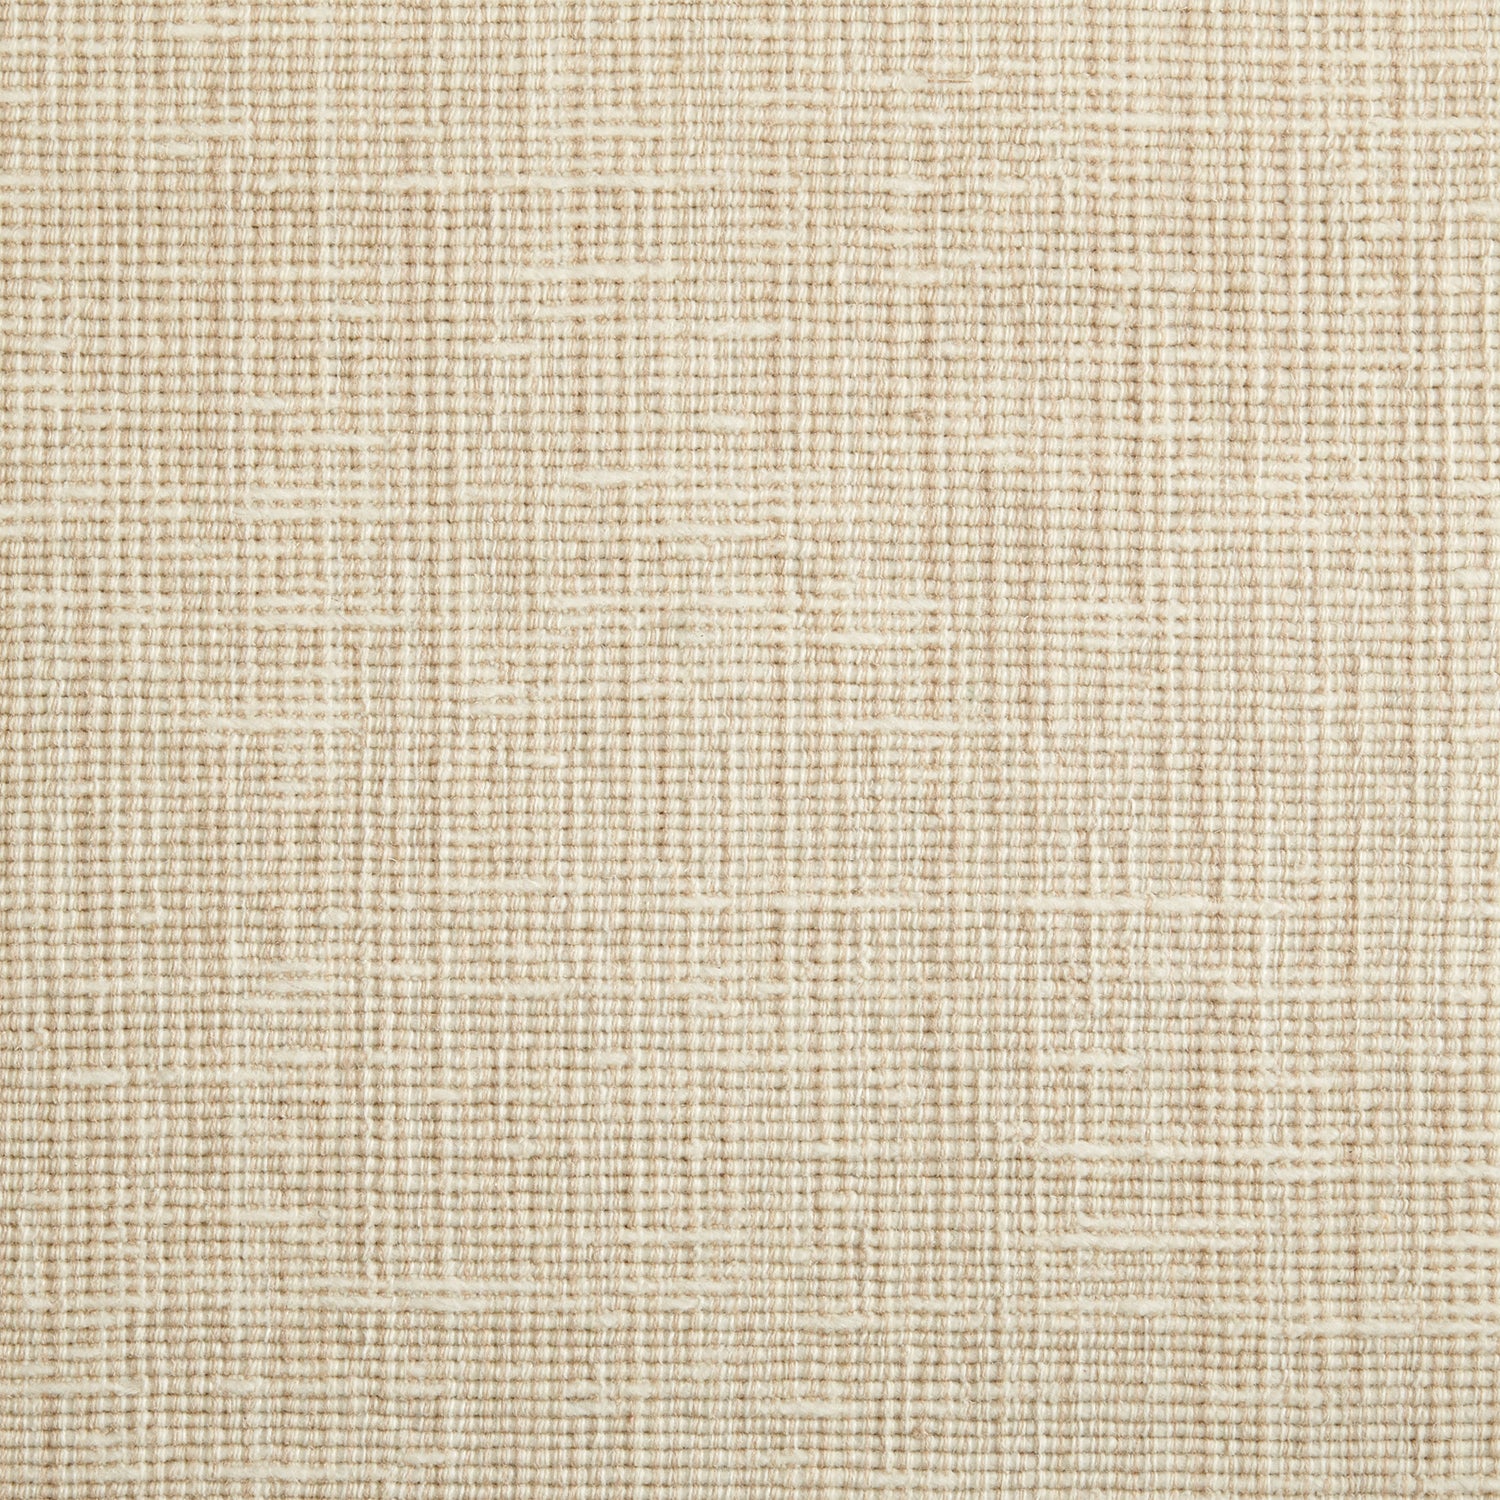 Wool broadloom carpet swatch in a chunky weave in mottled tan.